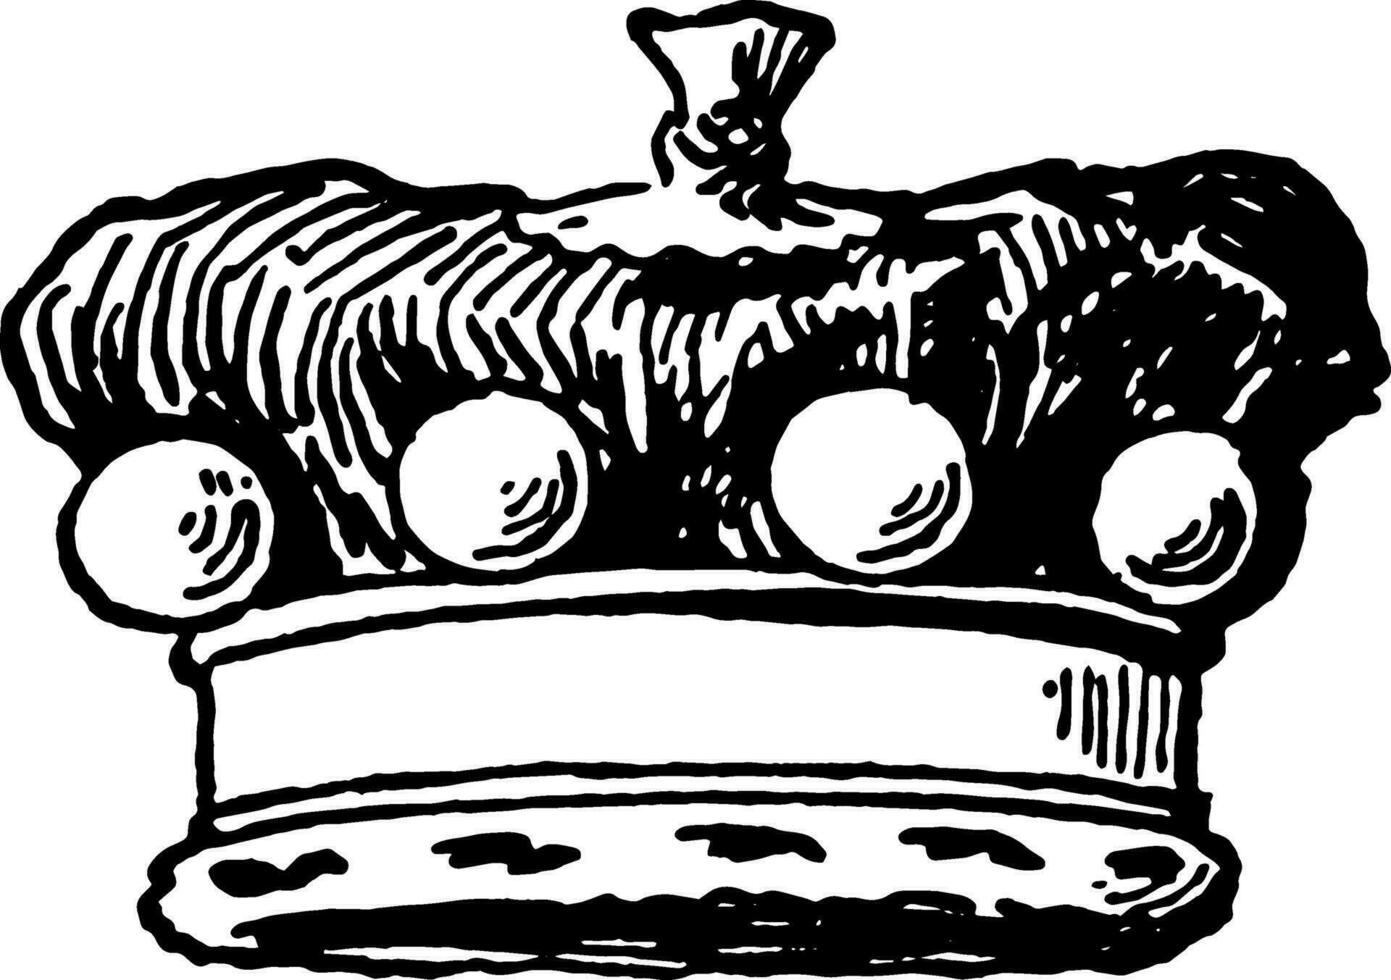 couronne est une baron couronne ancien gravure. vecteur